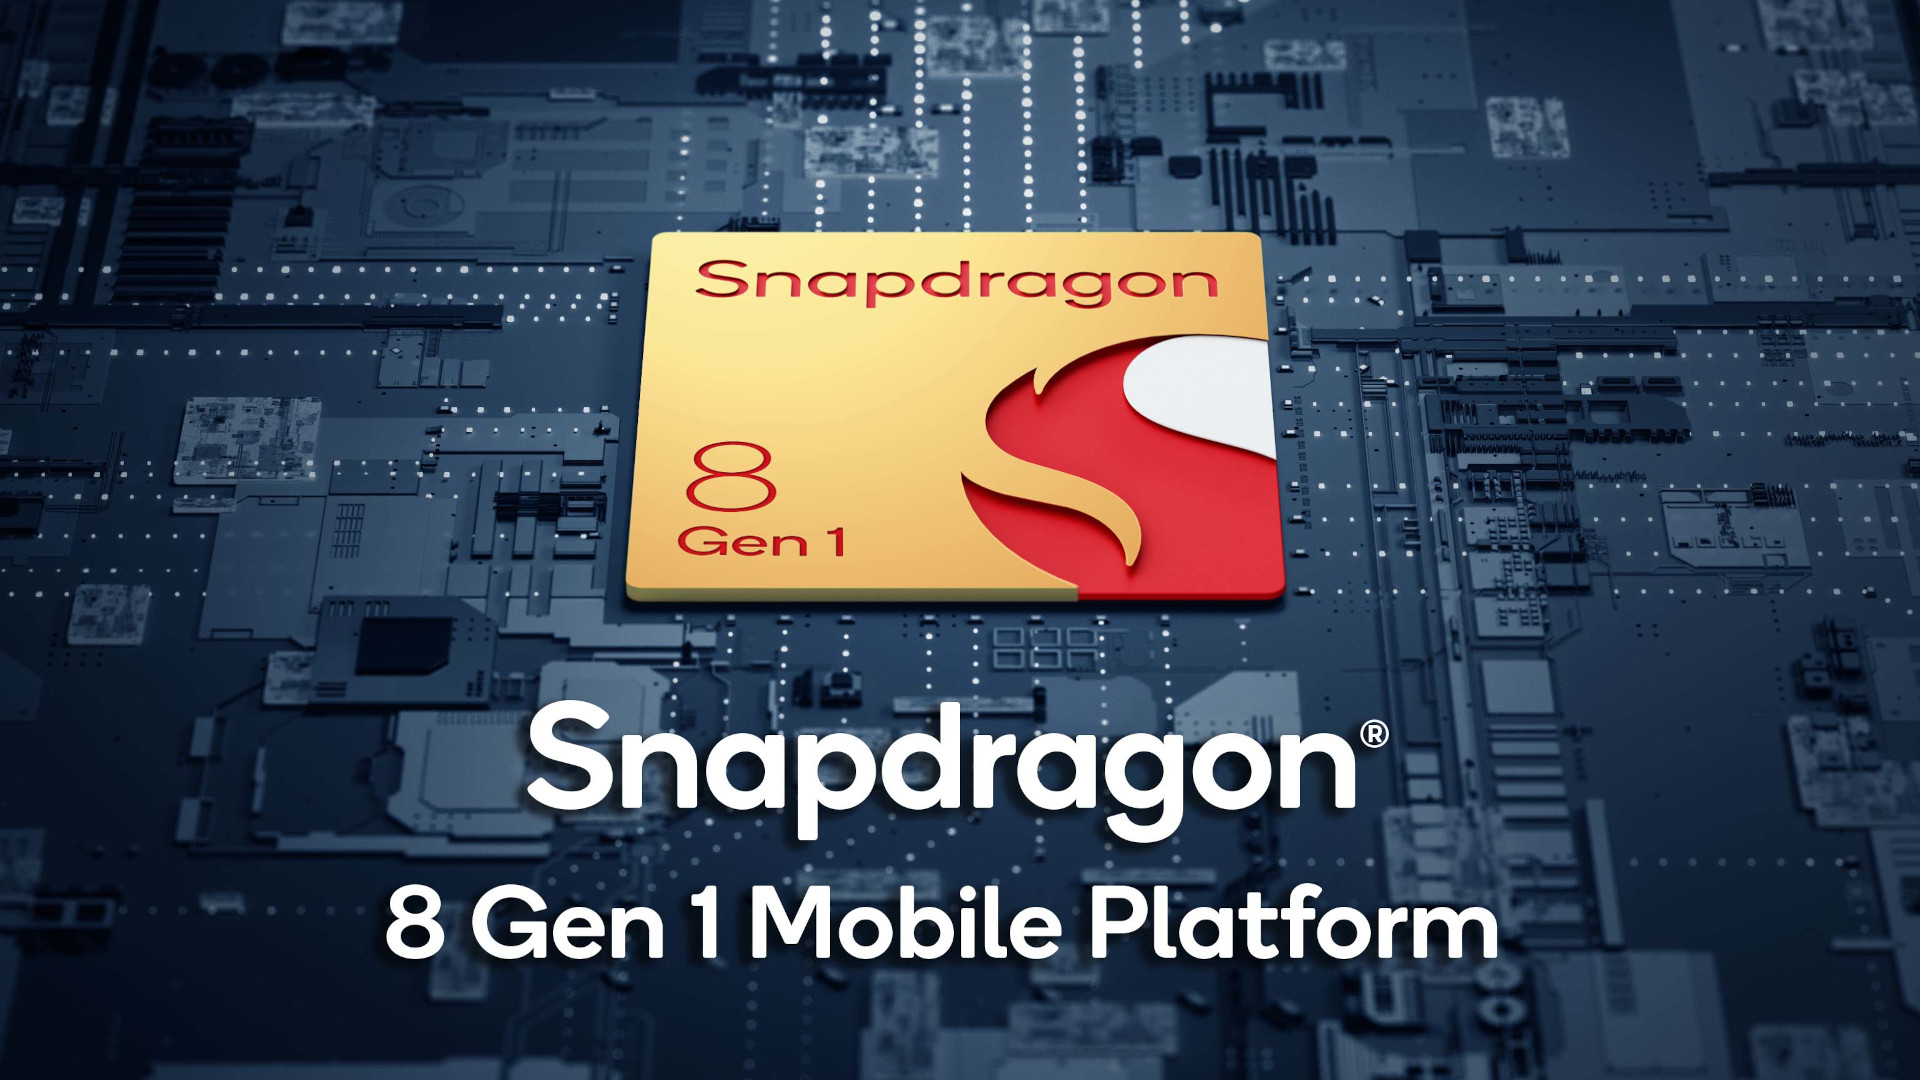 Snapdragon 8 Gen 1 hero image.